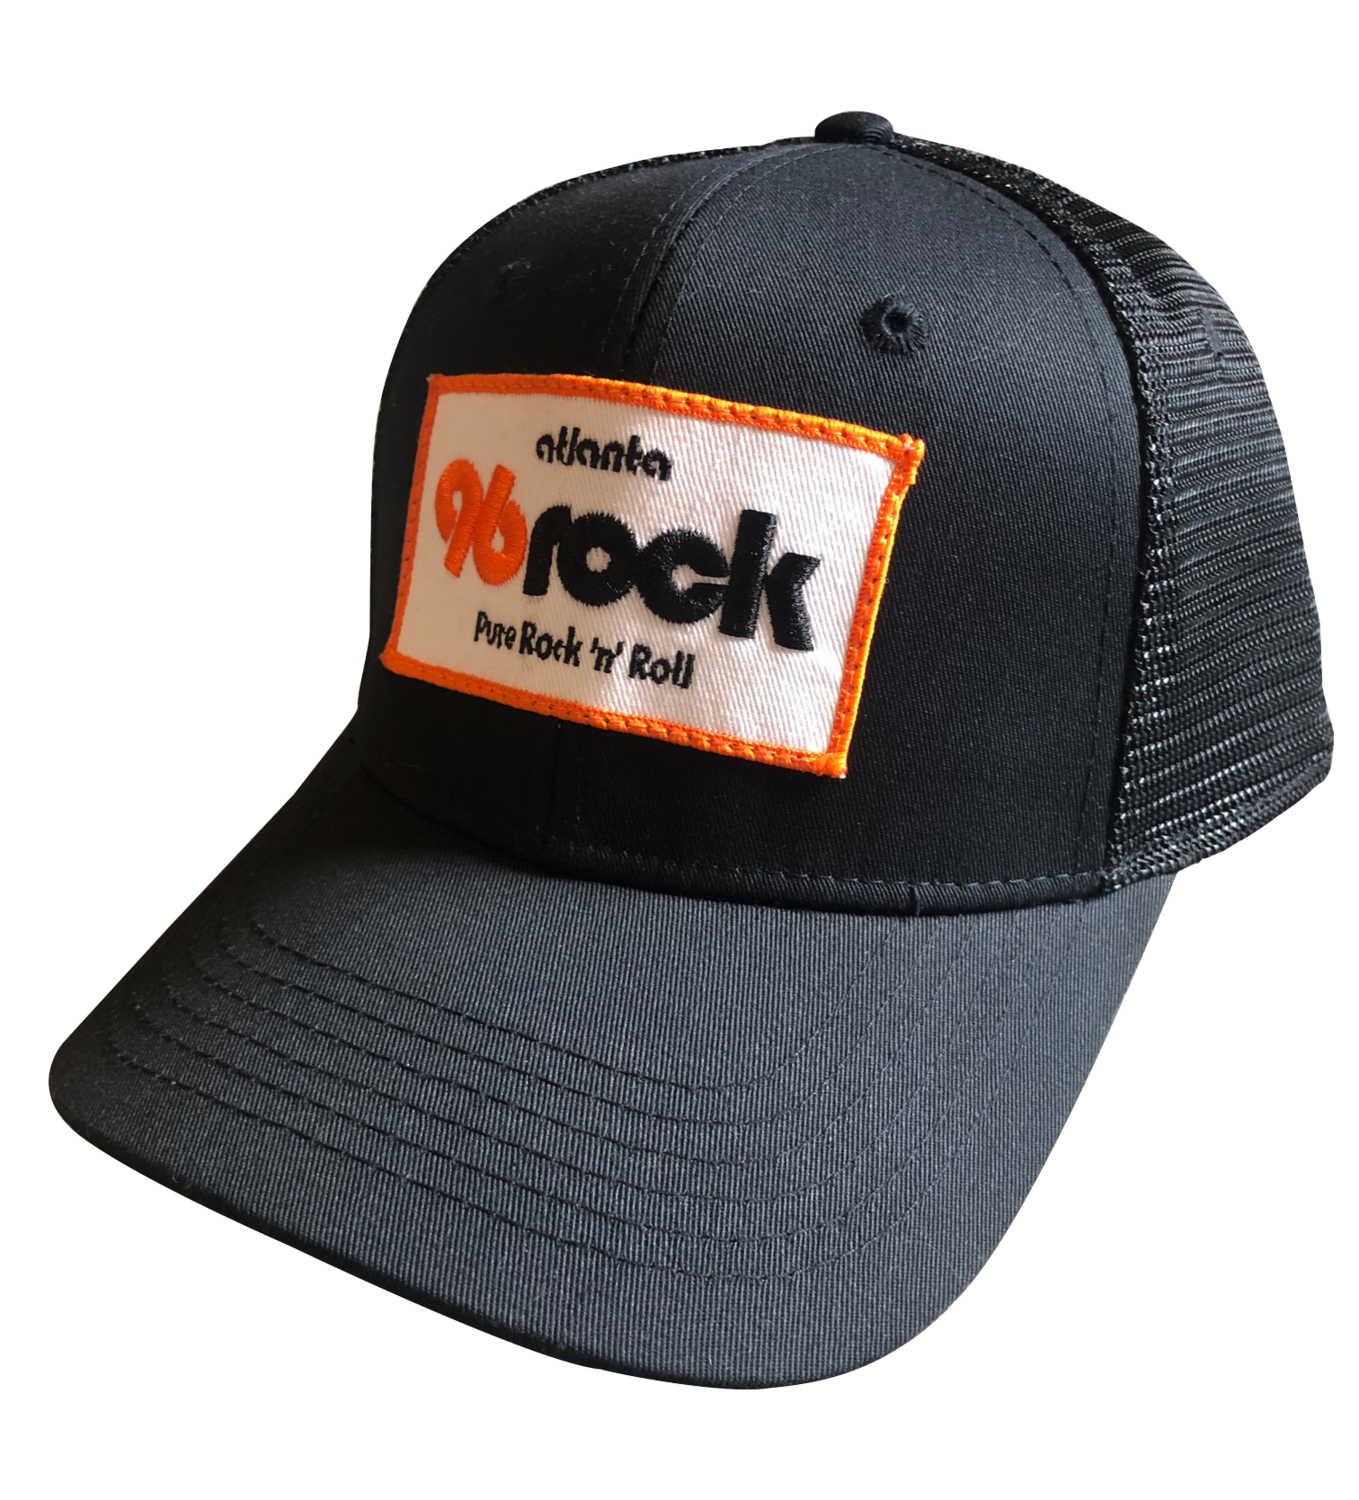 96 Rock Trucker Hat